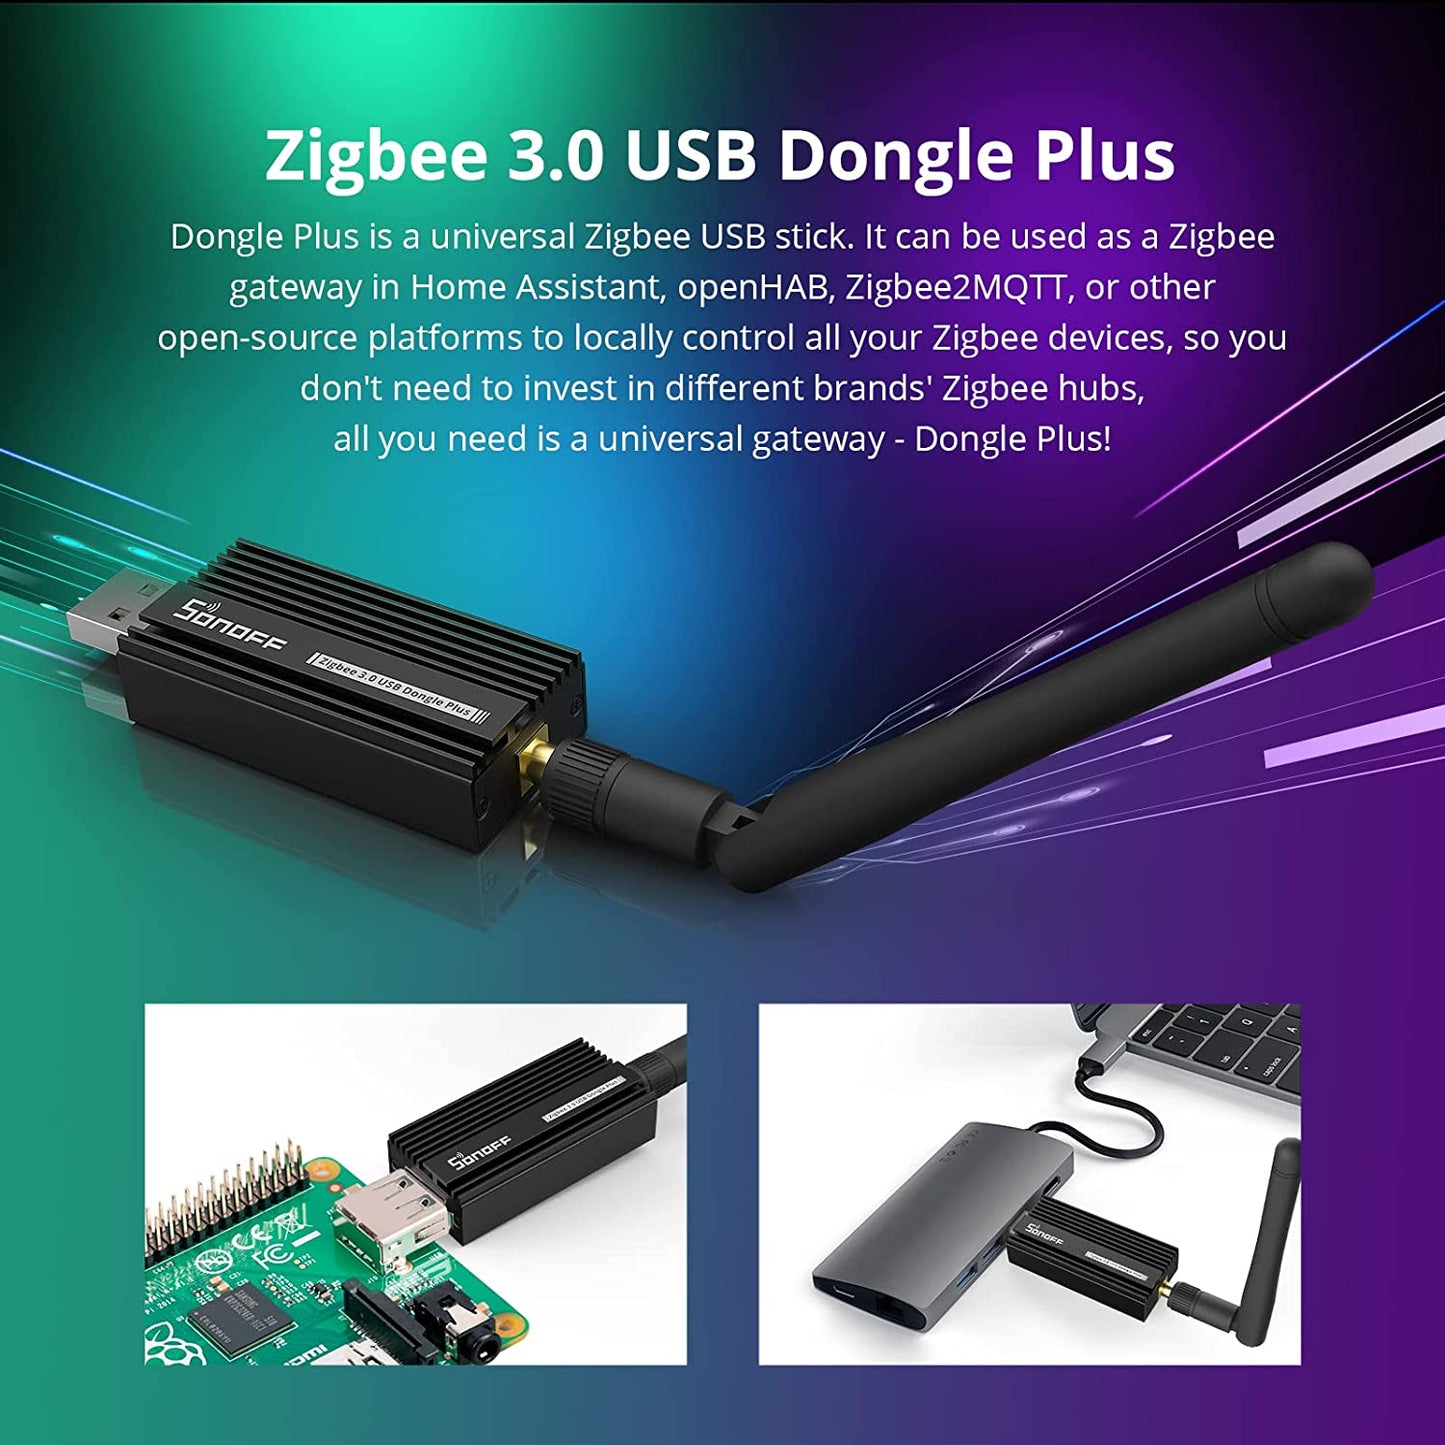 Sonoff ZBDongle E - ZigBee USB 3.0 Dongle Plus